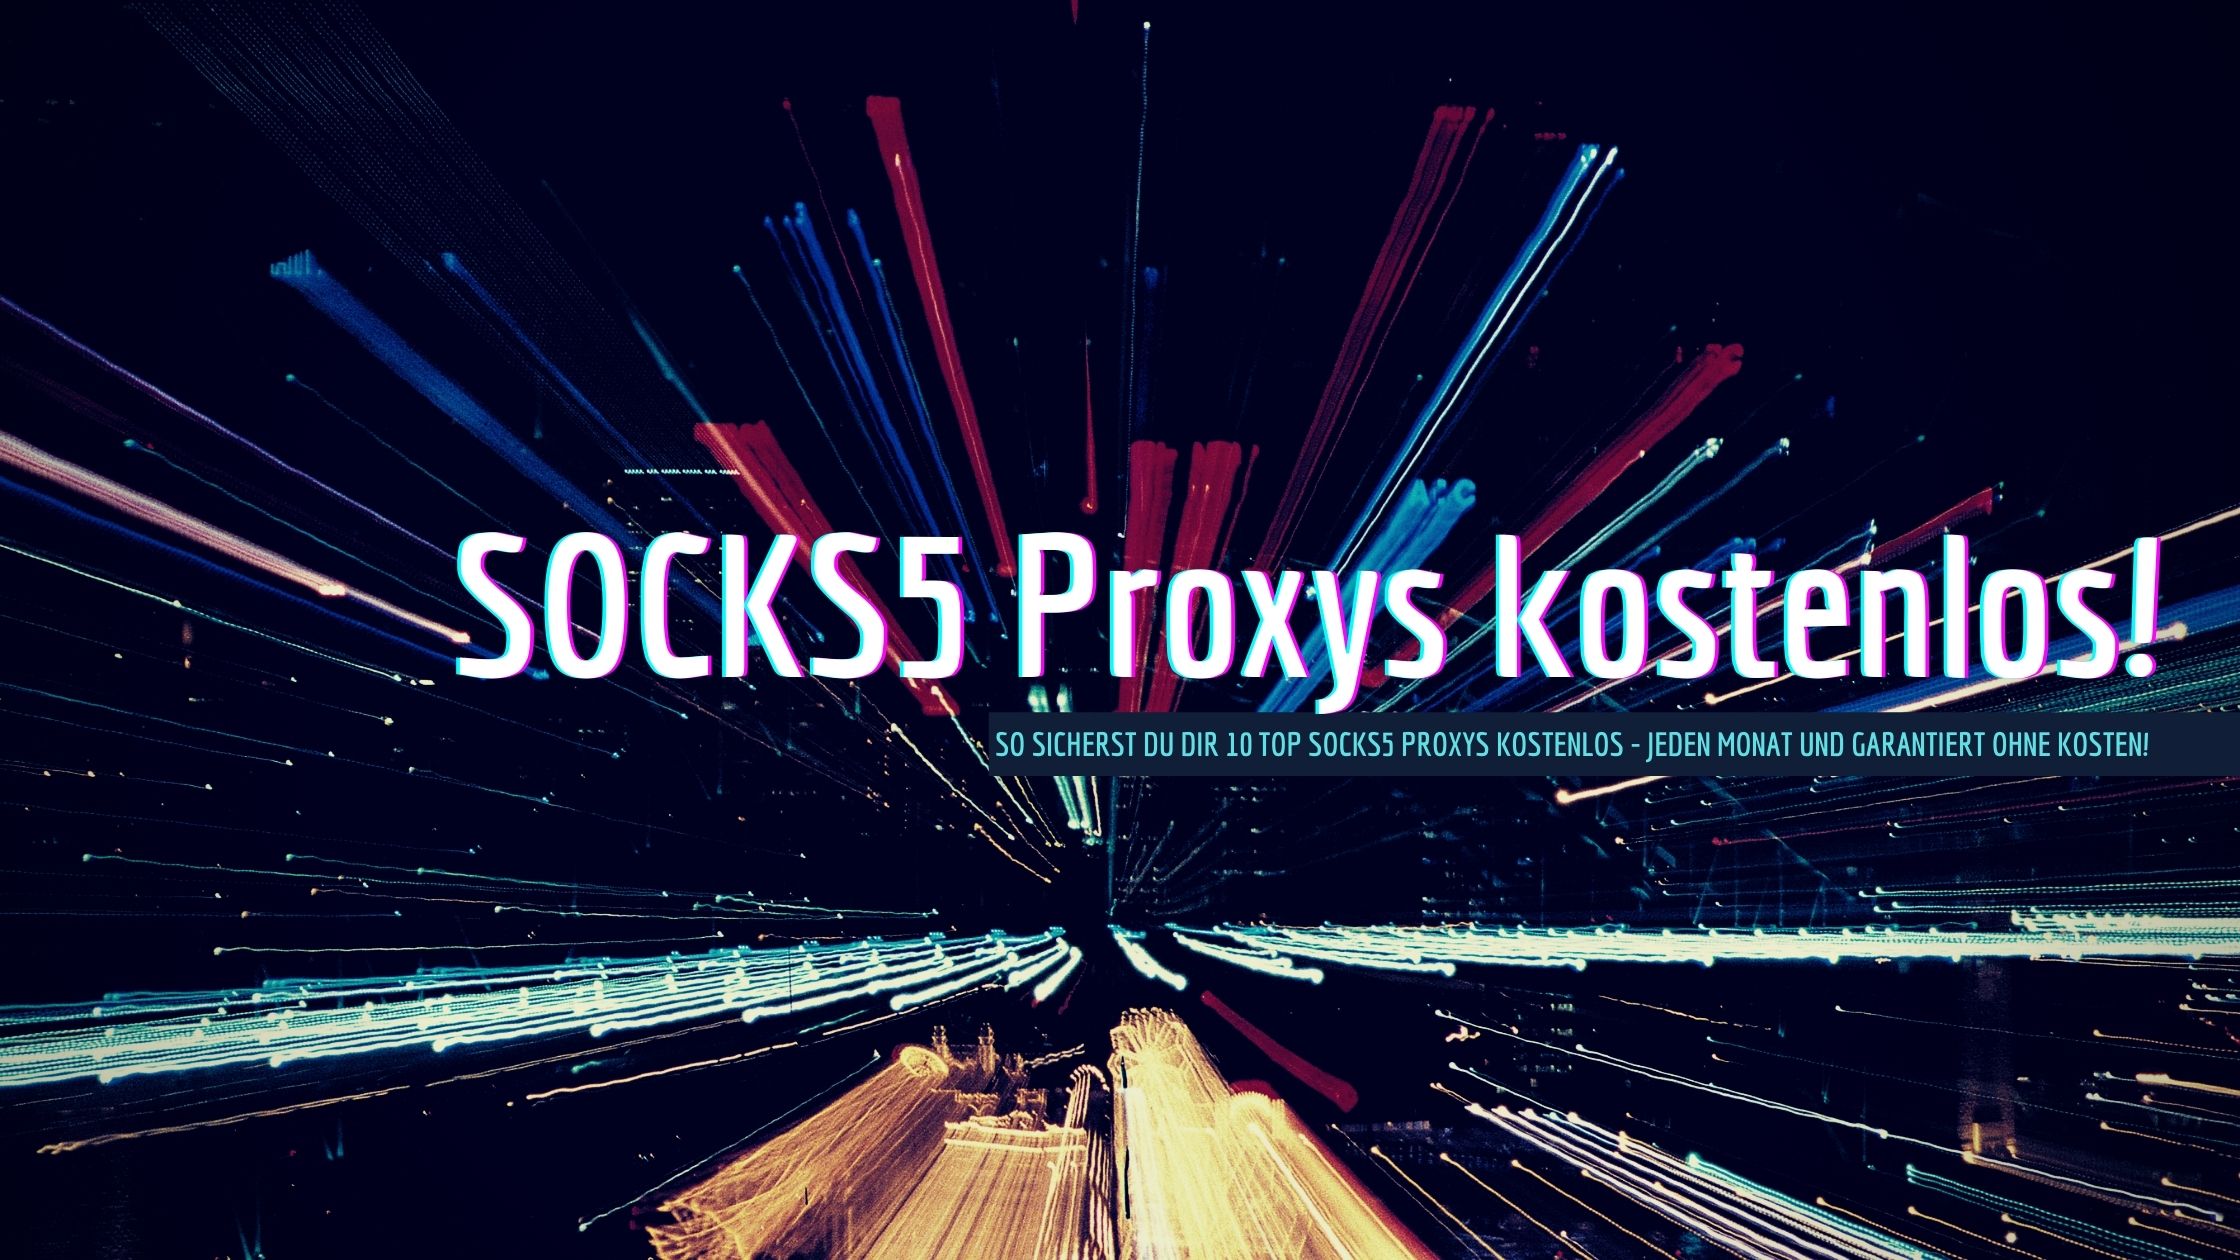 Jetzt jeden Monat 10 SOCKS5-Proxys kostenlos sichern - so funktioniert es!